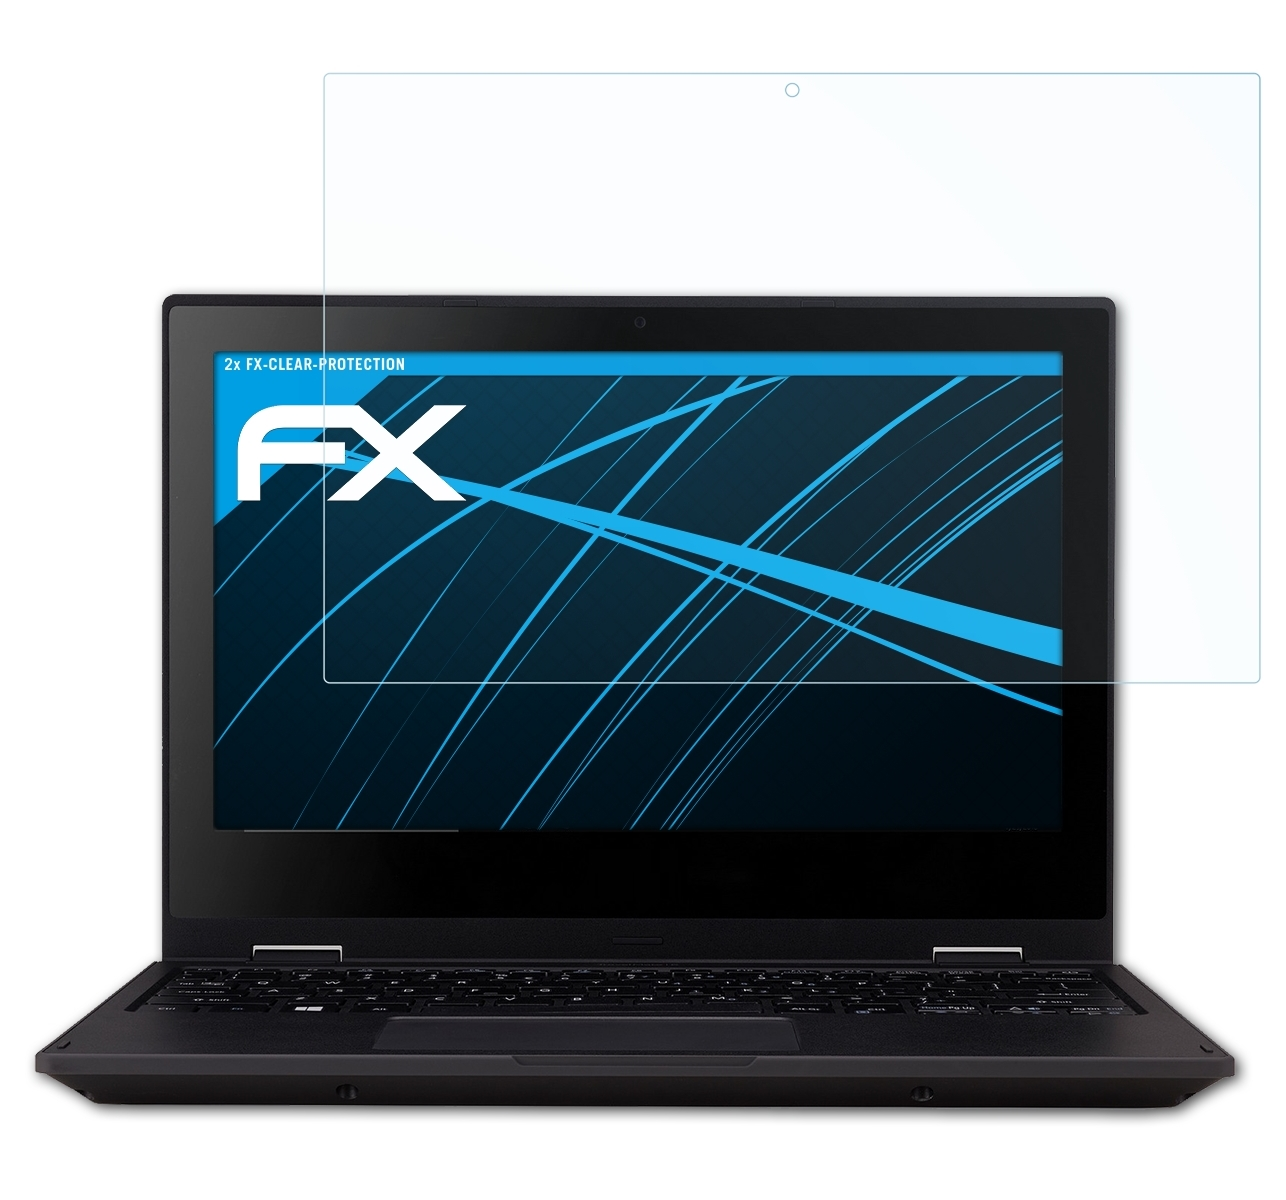 ATFOLIX 2x Acer Spin Displayschutz(für TravelMate B1) FX-Clear